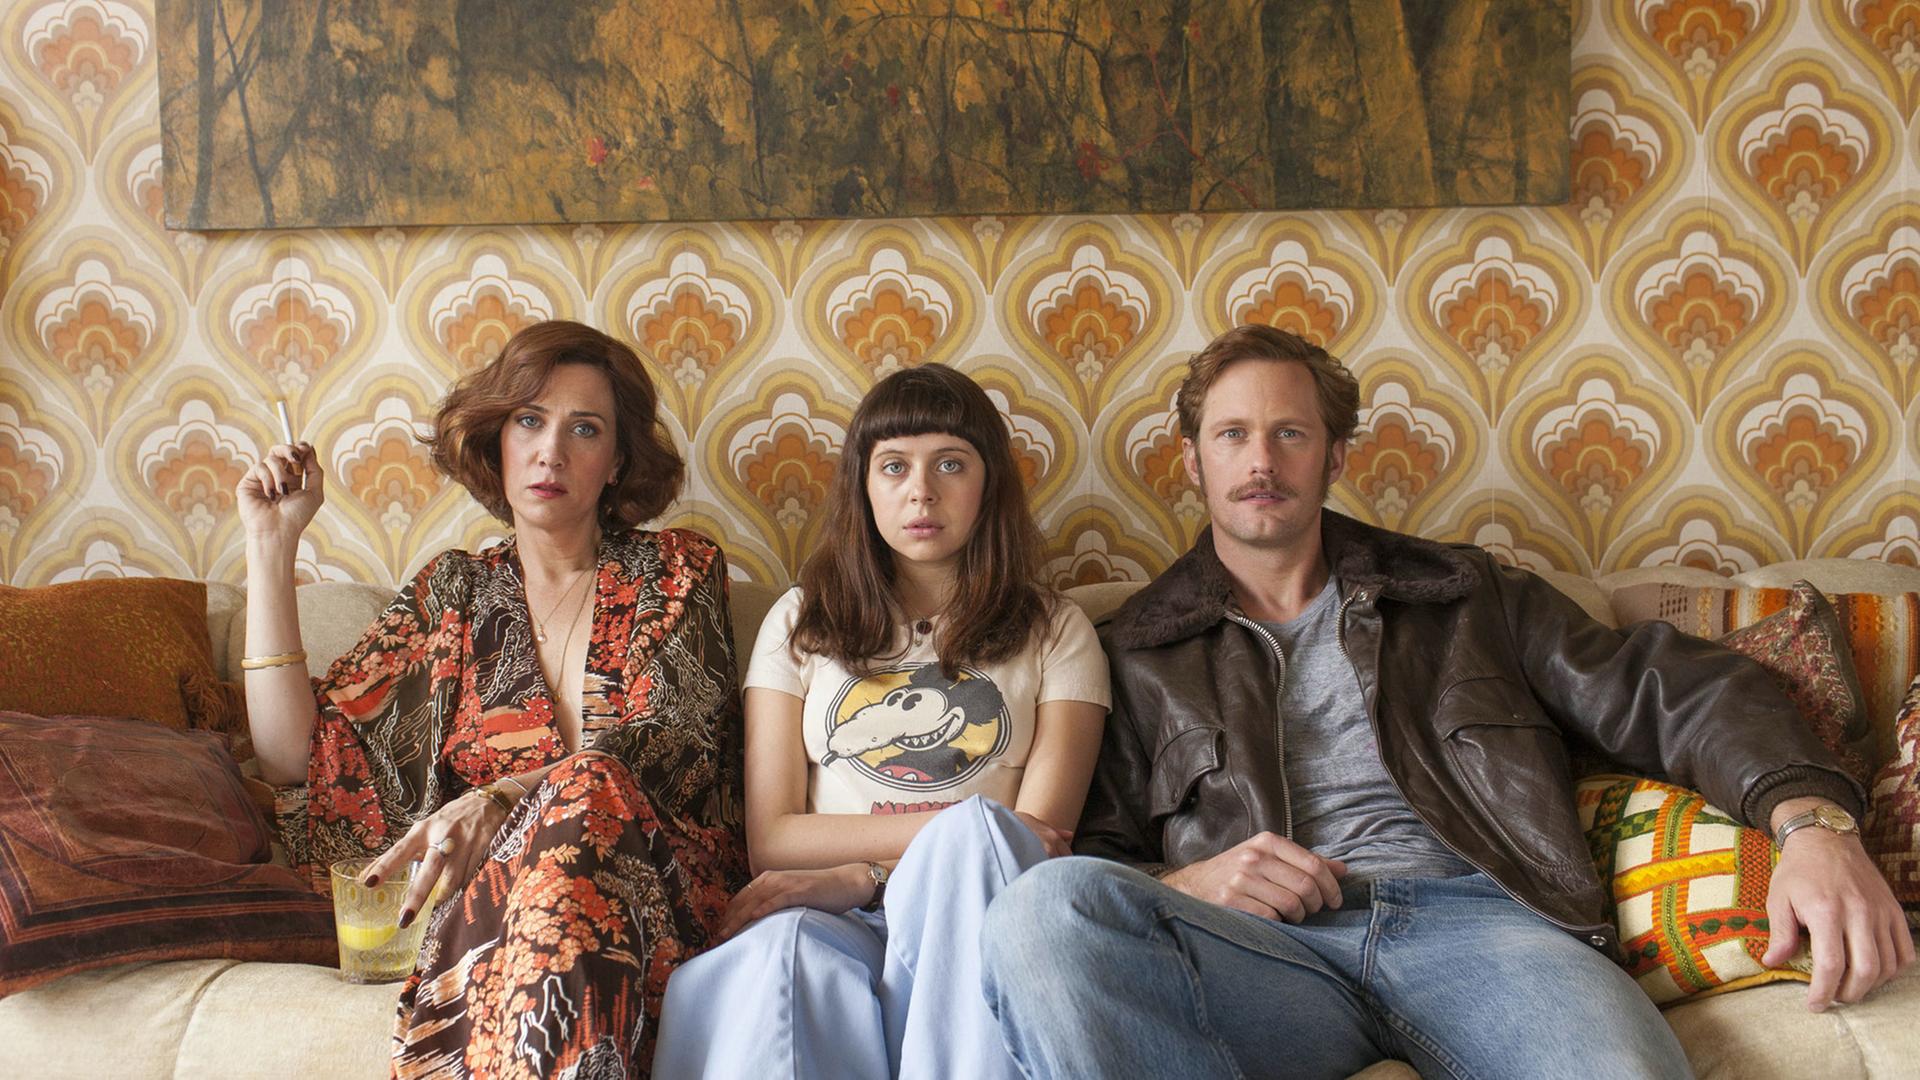 Kristen Wiig als Charlotte Goetze, Bel Powley als Minnie Goetze und Alexander Skarsgard als Monroe sitzen in einer Szene des Films "The Diary of a Teenage Girl" nebeneinander auf einem Sofa.